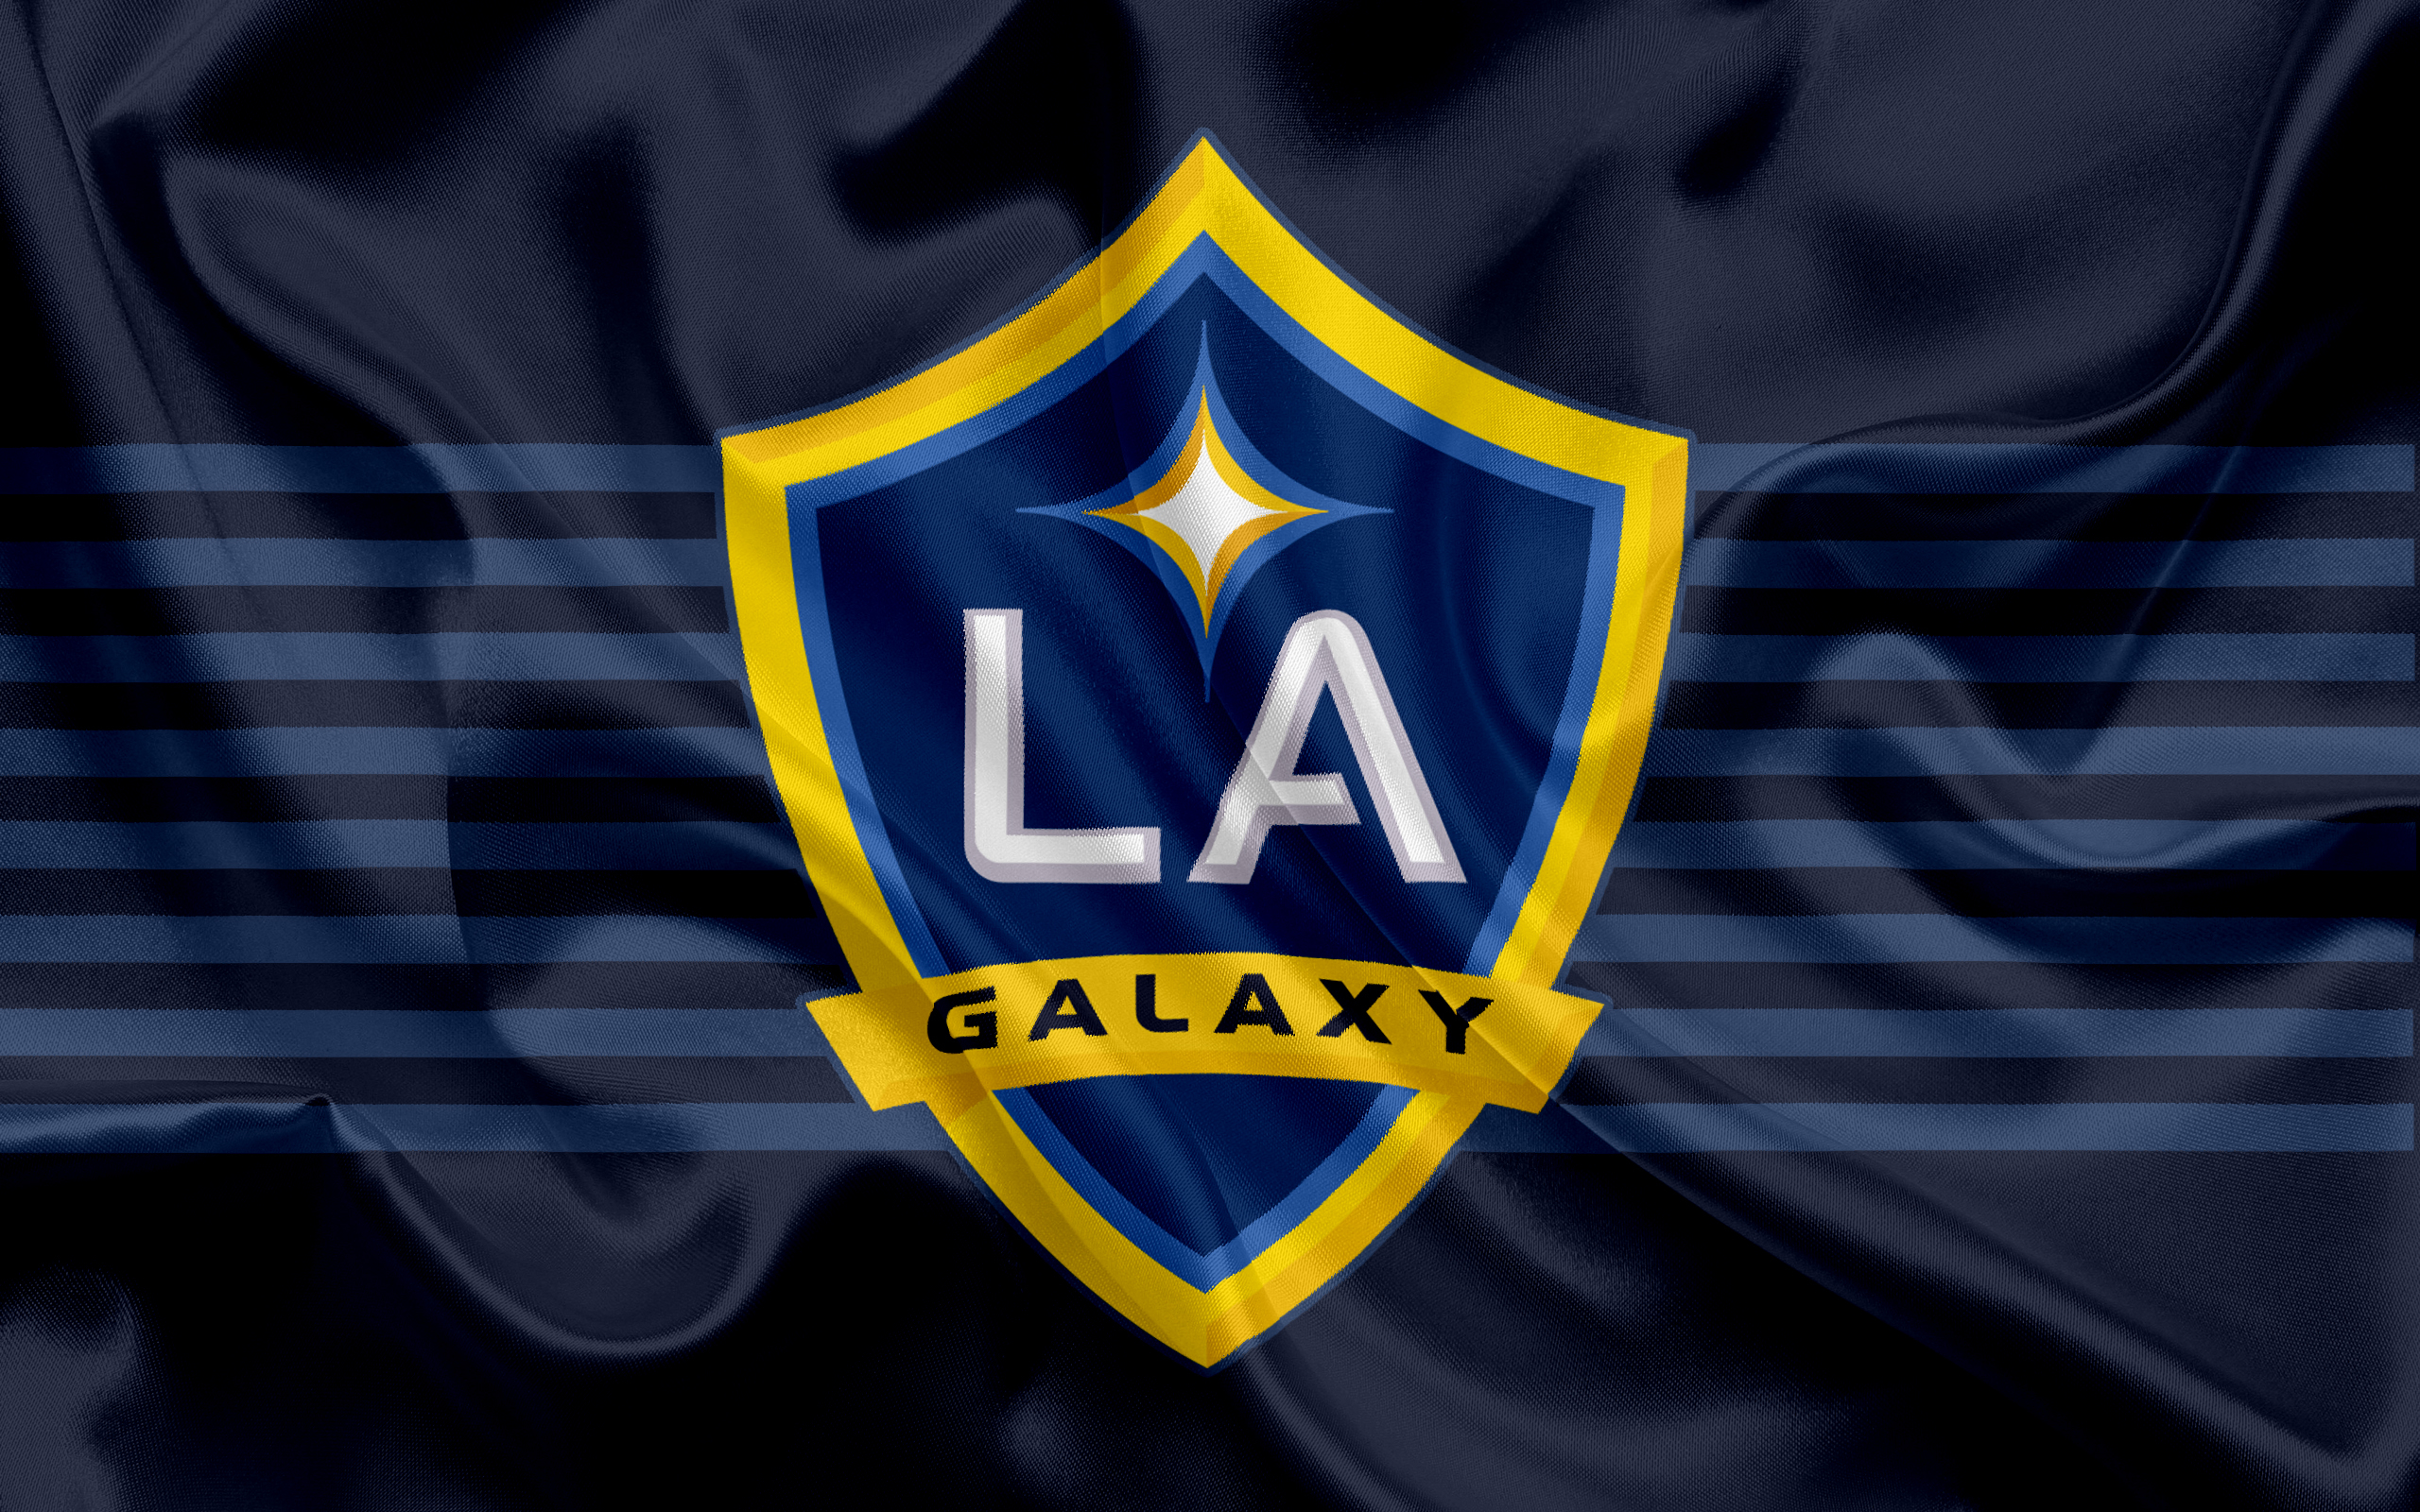 la galaxy wallpaper,jersey,logo,electric blue,sportswear,emblem